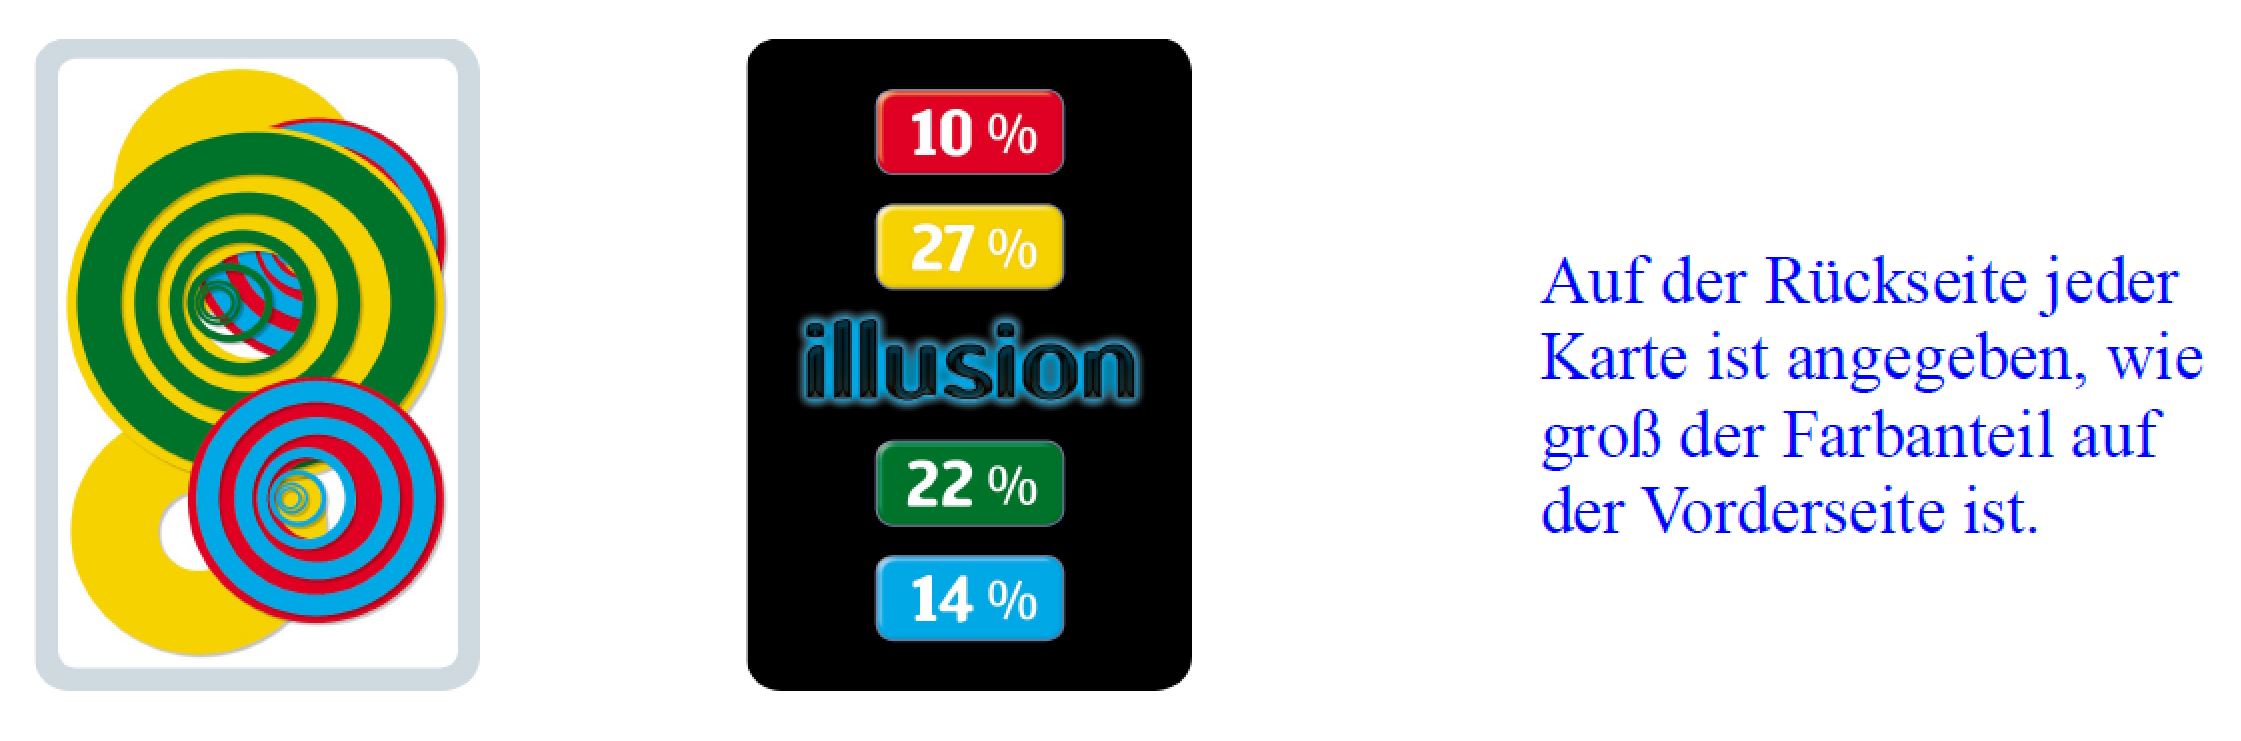 illusion-spiel-01.JPG